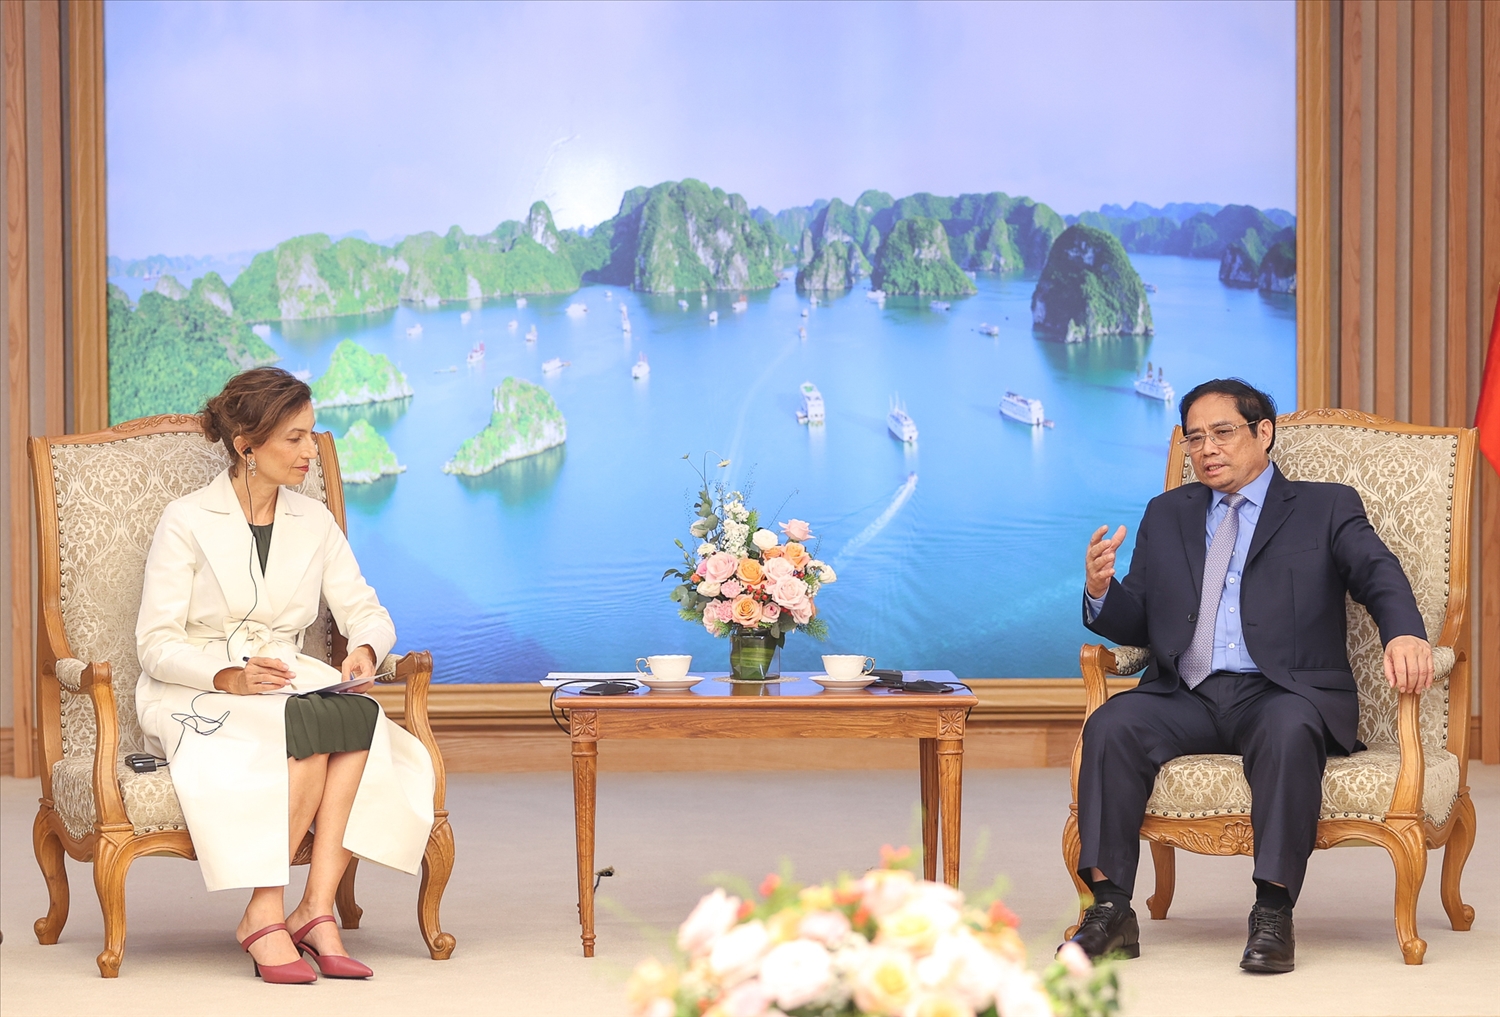 Thủ tướng Chính phủ khẳng định Việt Nam sẽ tiếp tục phát huy vai trò là thành viên tích cực, có trách nhiệm của Tổ chức UNESCO, chủ động tham gia các hoạt động và đóng góp vào các nỗ lực của tổ chức vì hòa bình, hợp tác và phát triển của quốc gia thành viên - Ảnh: VGP/Nhật Bắc